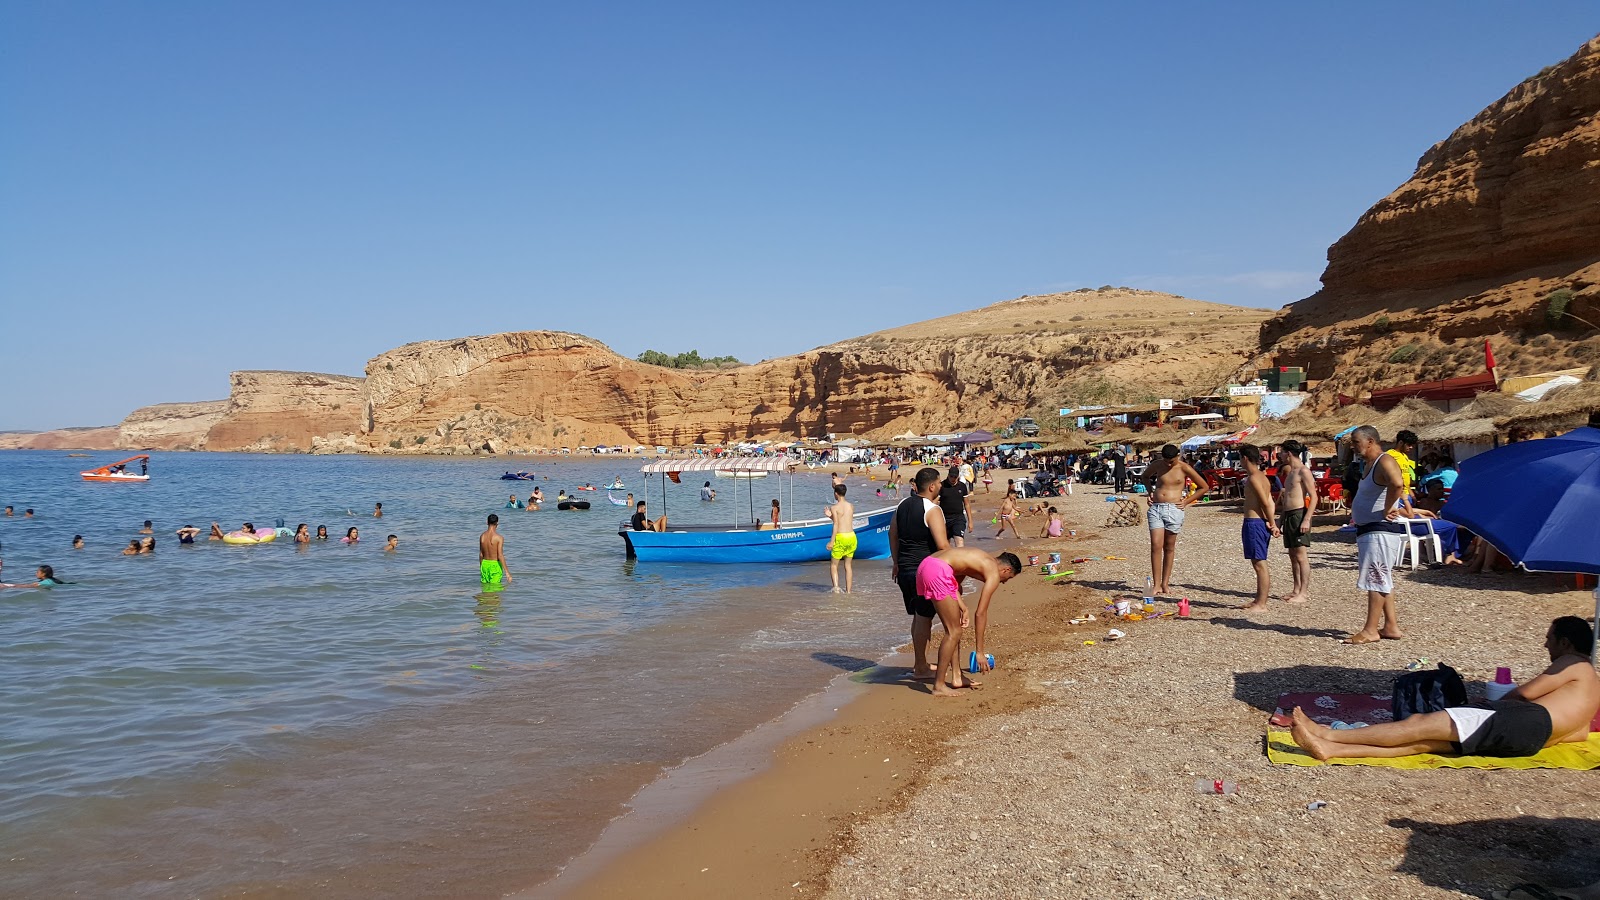 Fotografija Plage Sidi El Bachir z turkizna voda površino